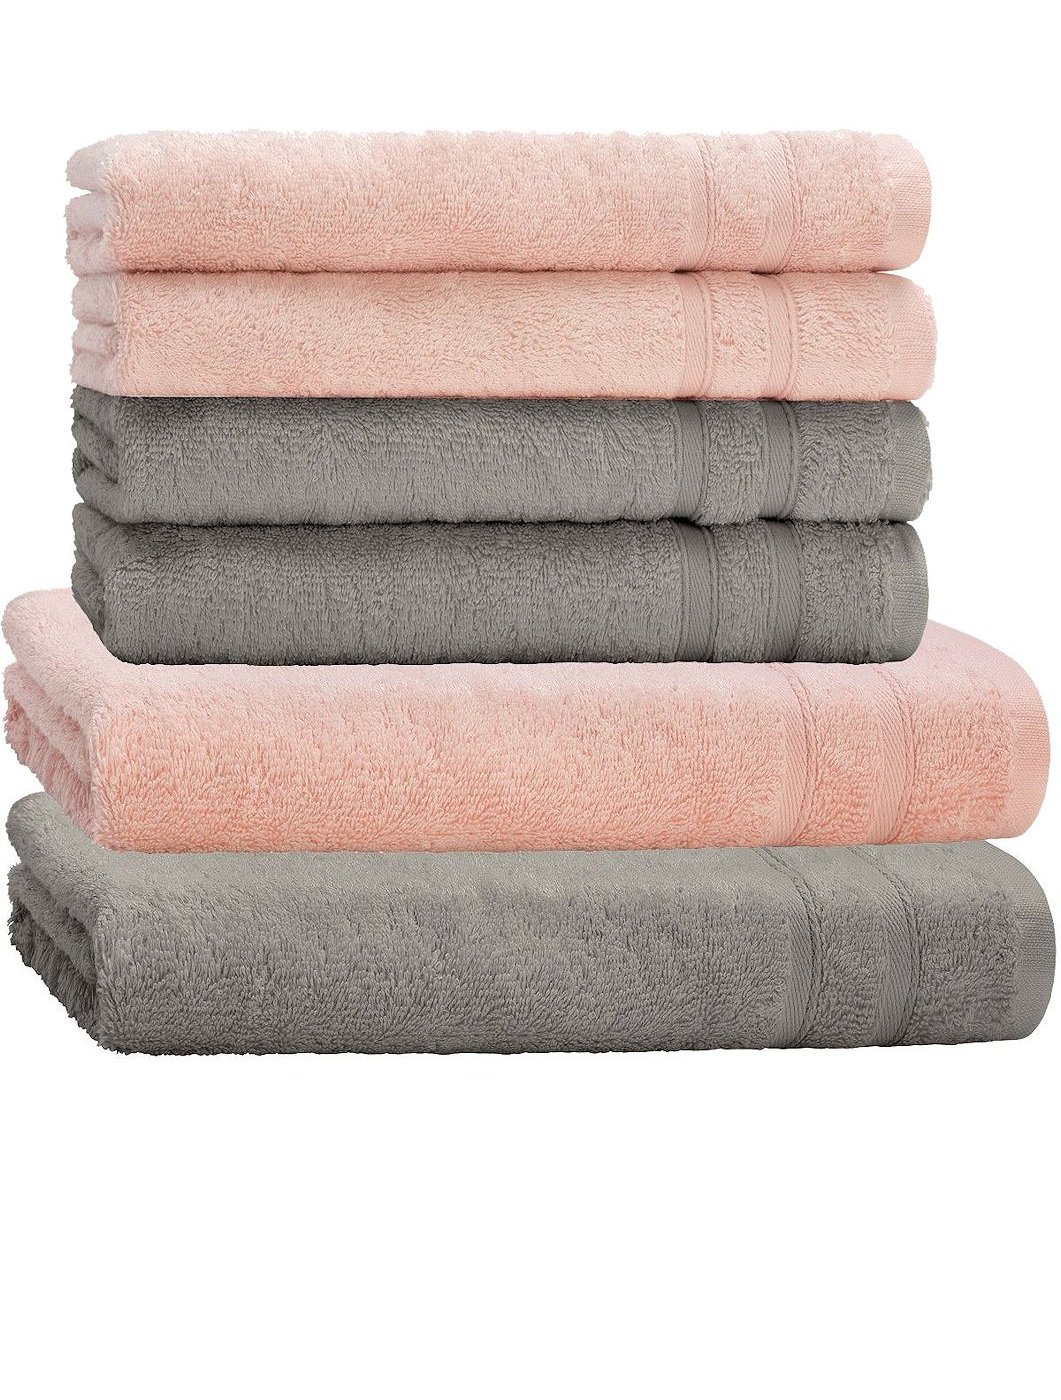 Handtuch Set 6tlg. 4 Handtücher 2 Duschtücher Duschtuch Baumwolle 2 Farben  Mix | eBay